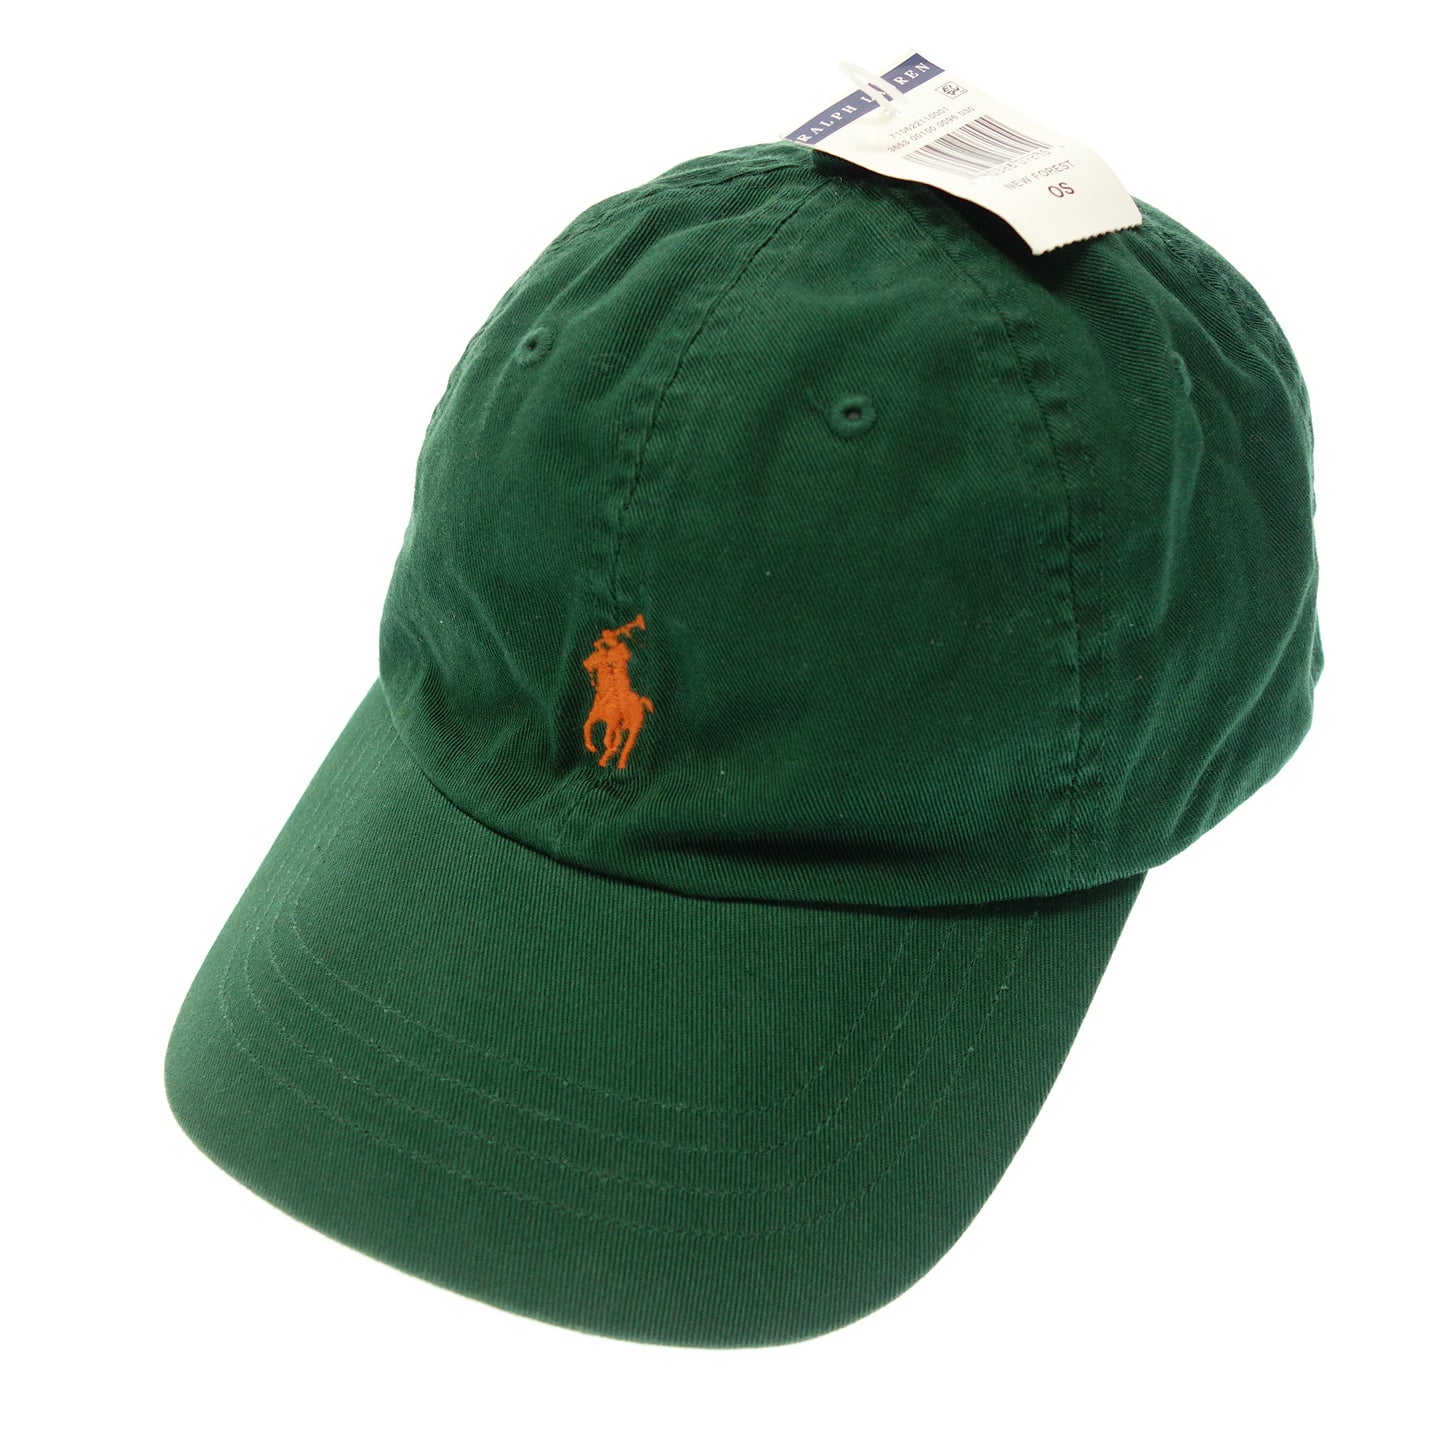 二手 Polo Ralph Lauren 帽子帽子小马标志 3 件套 POLO RALPH LAUREN [AFI20] 